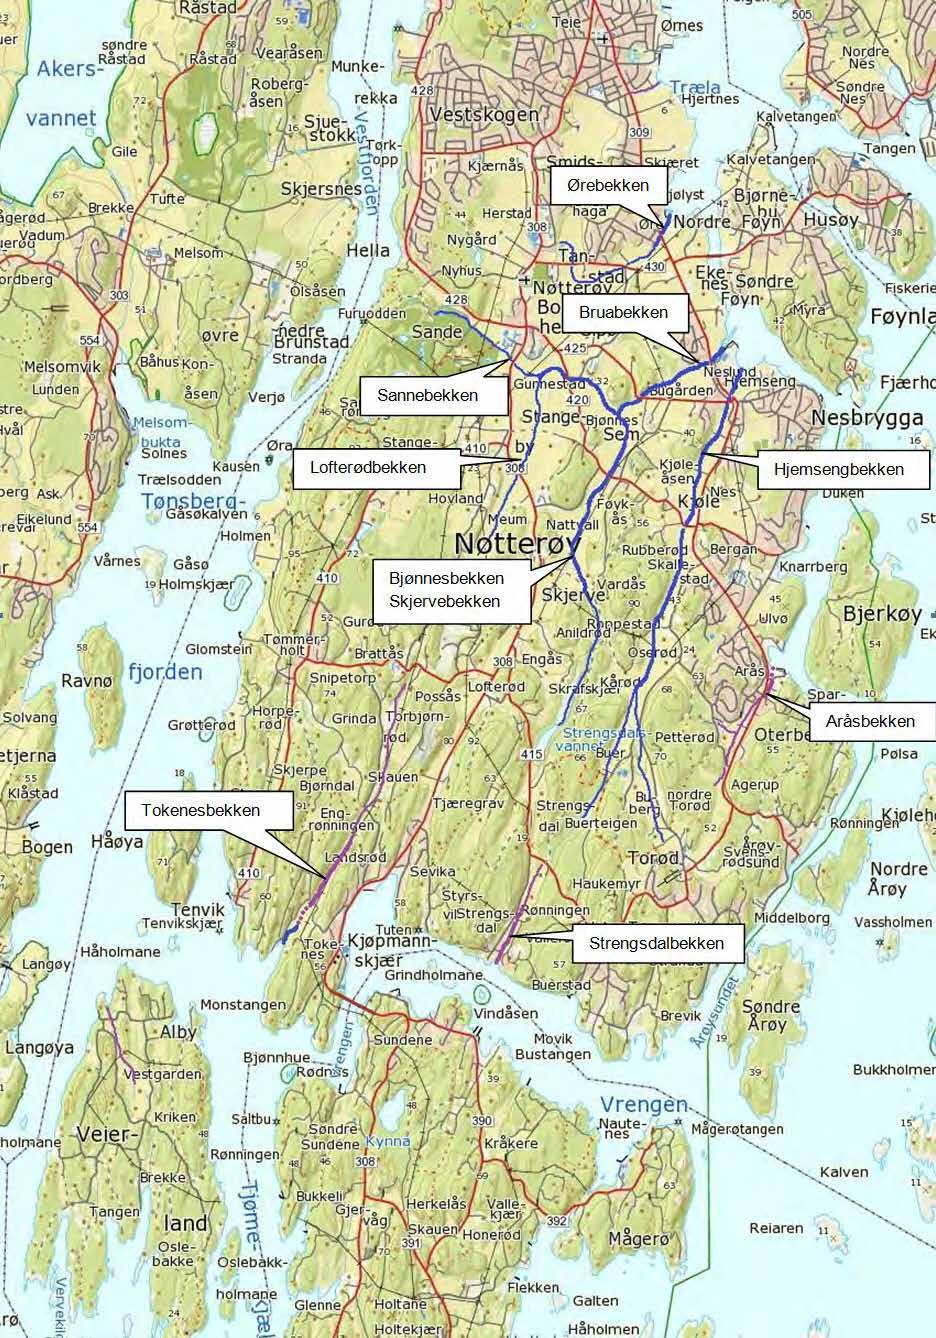 NØTTERØY KOMMUNE - Kilde: Tønsberg og omegn jeger- og